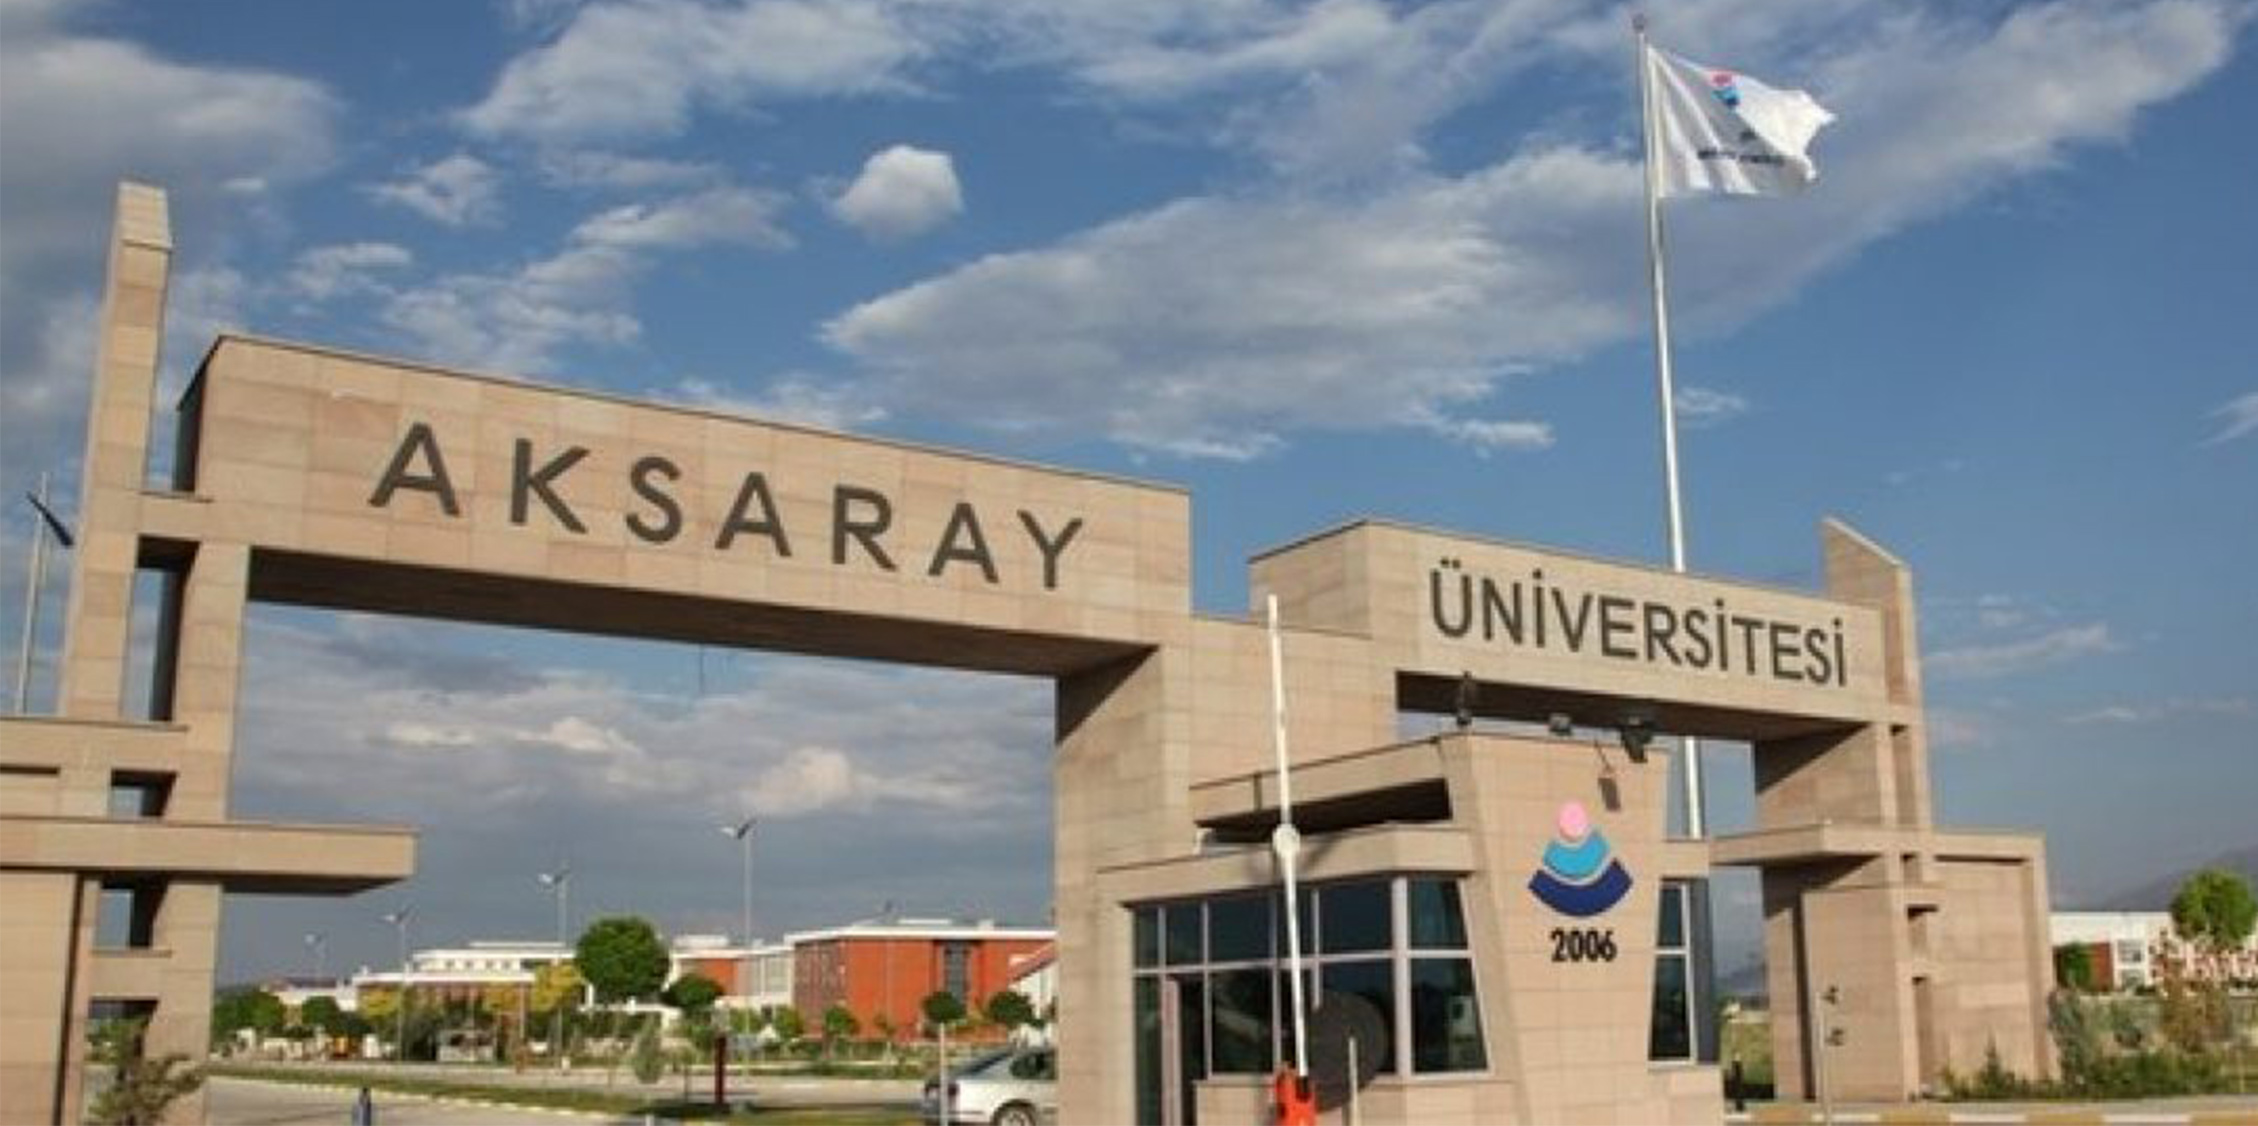 aksaray universitesi find and study 1 - تُعد جامعة أكسراي